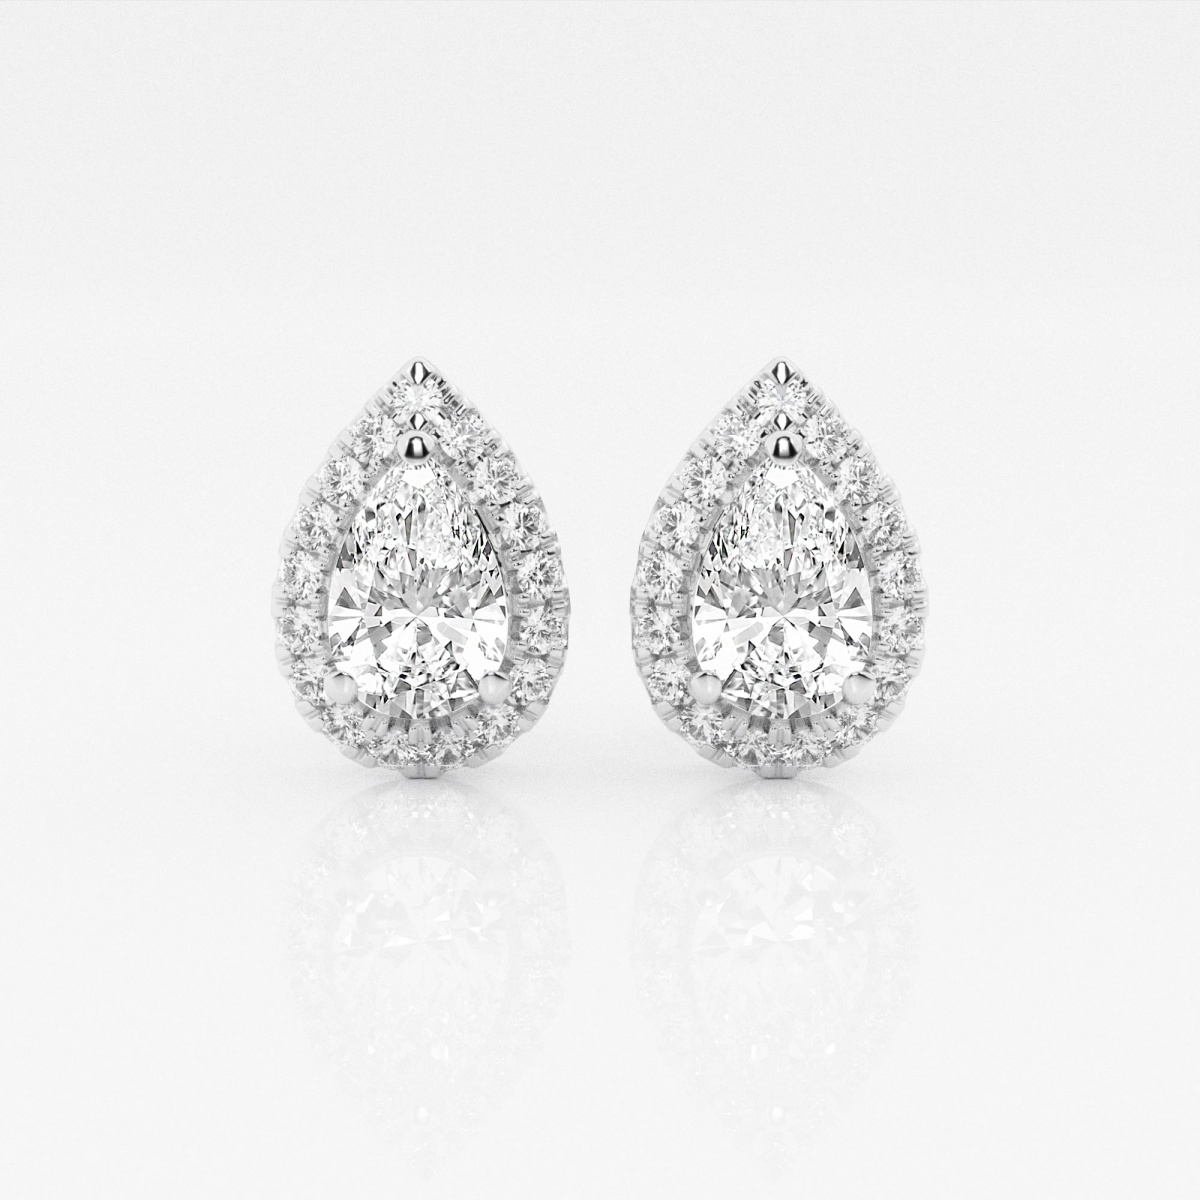 1 7/8 ctw Pear Lab Grown Diamond Halo Certified Stud Earrings